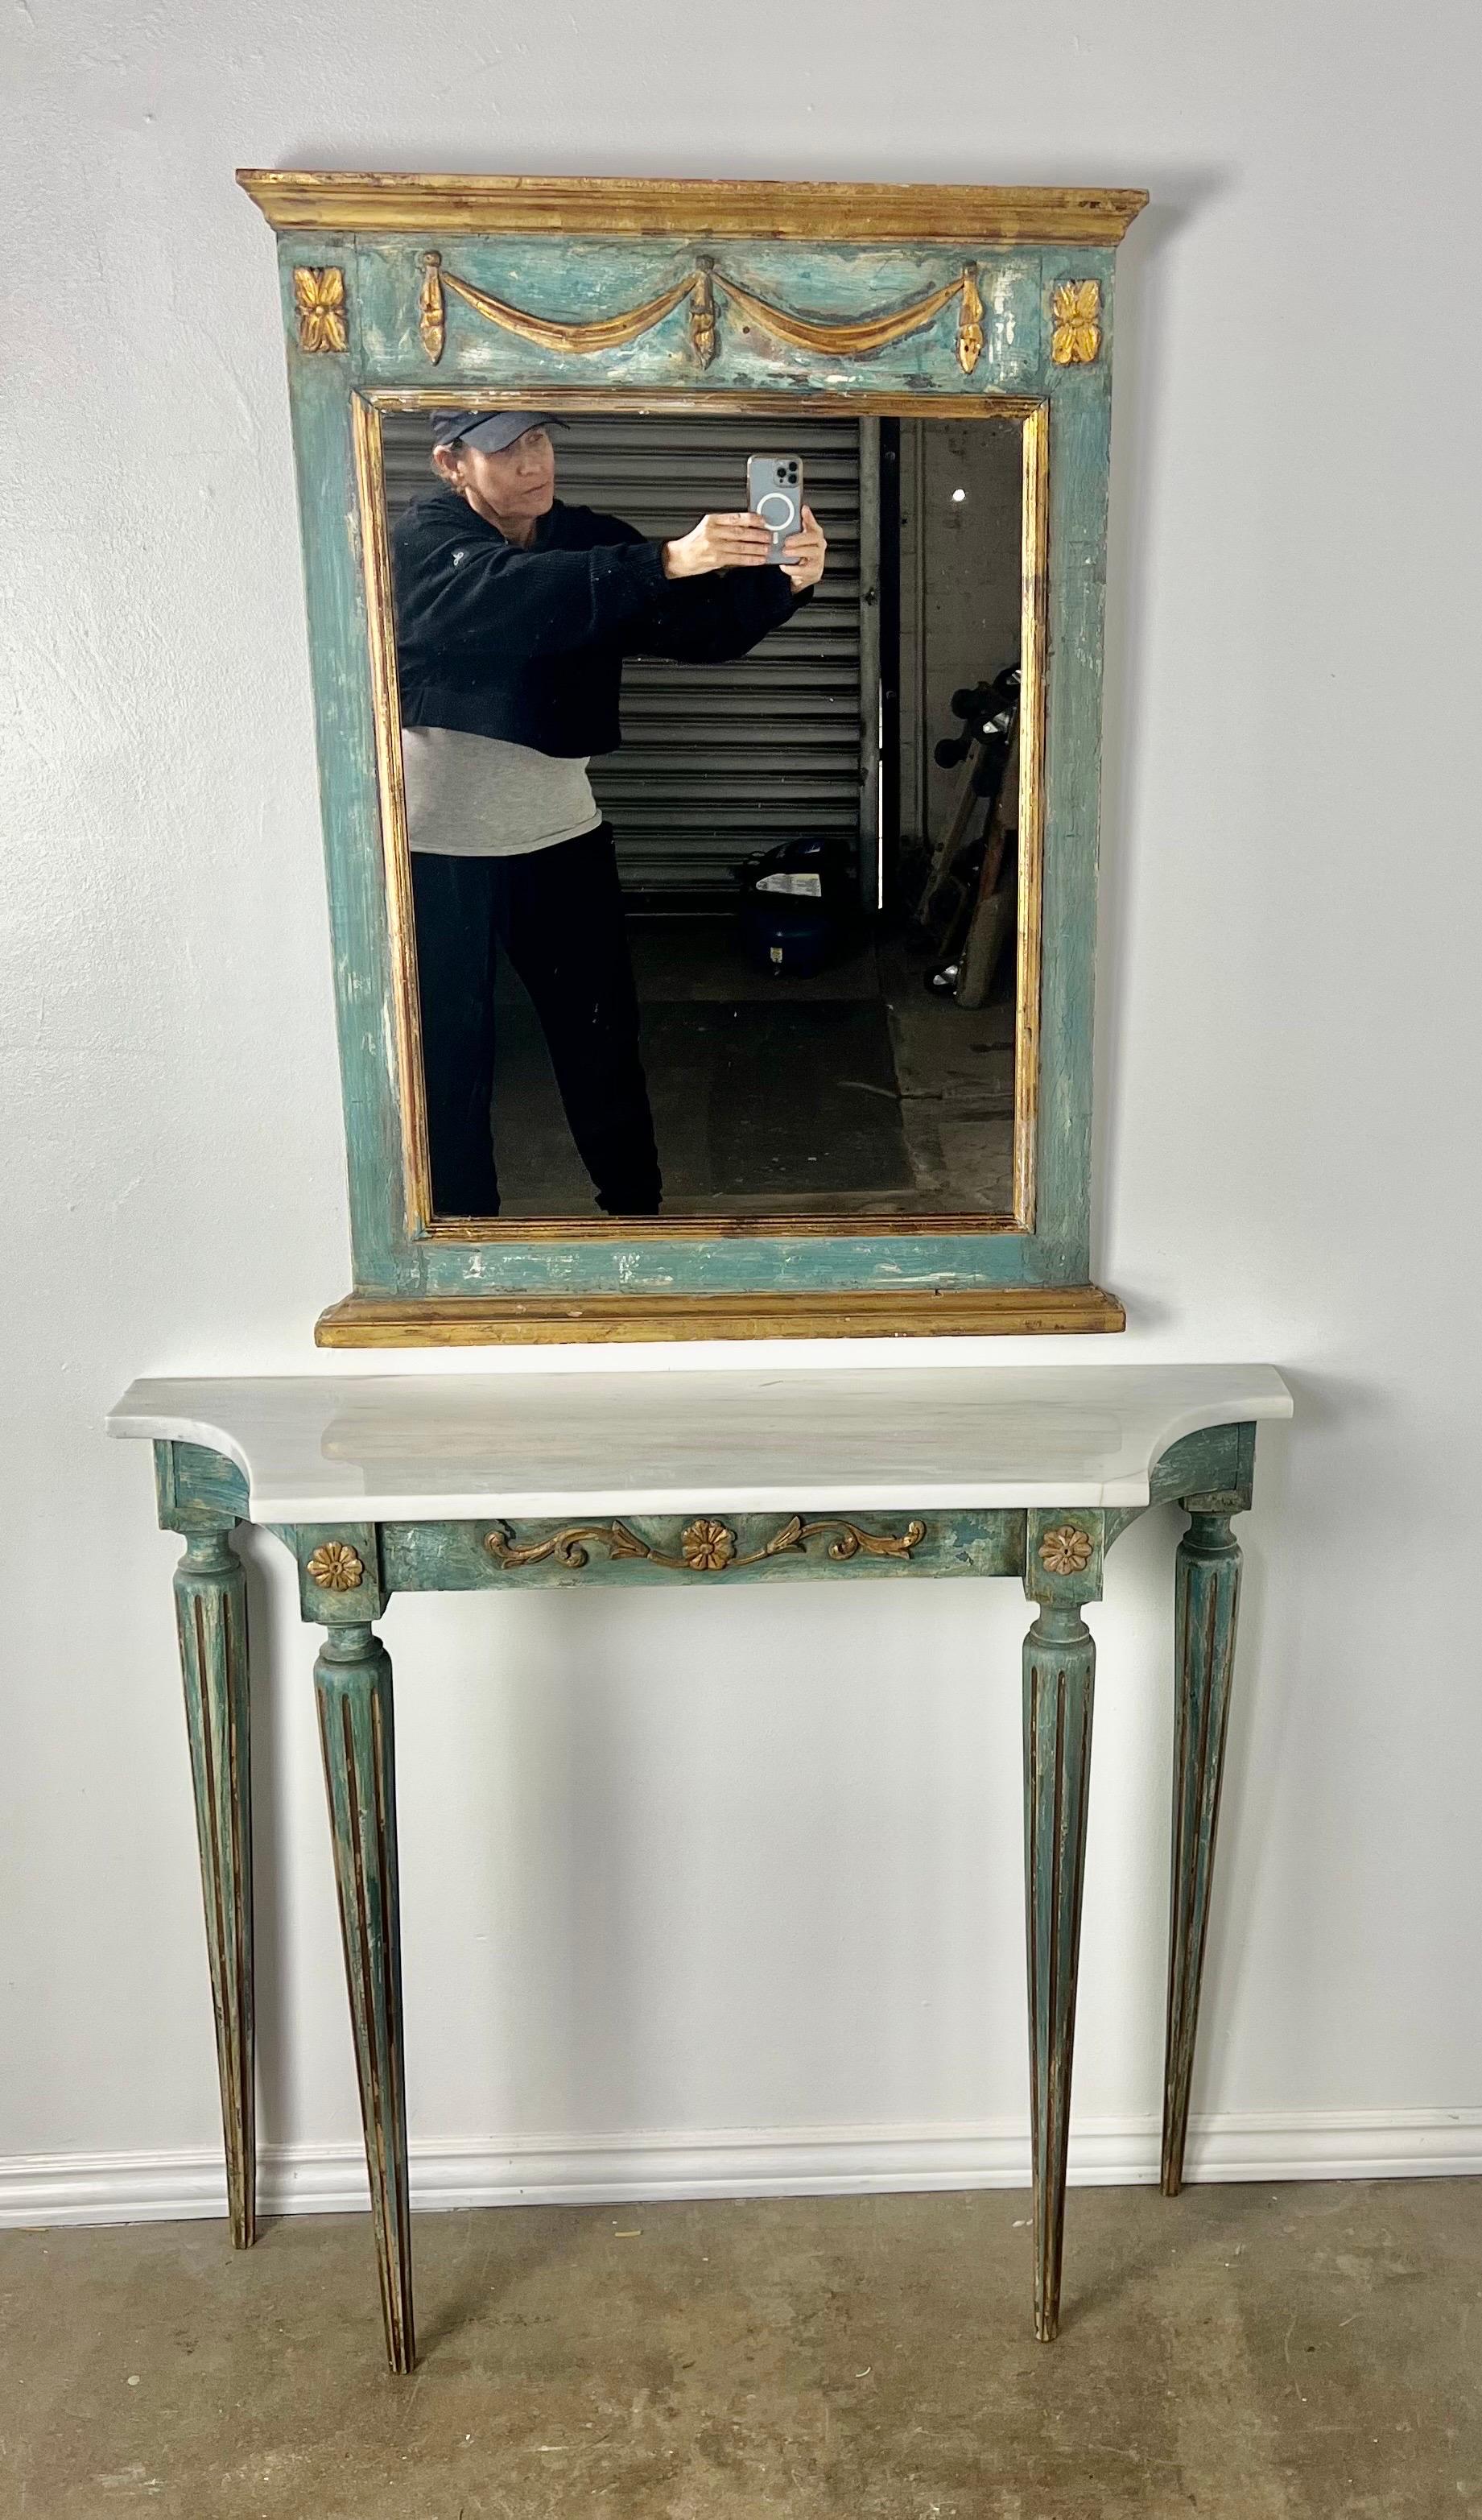 Console italienne peinte des années 1930 avec miroir assorti.  La console repose sur quatre pieds cannelés et possède un plateau en pierre.  Elles sont peintes en bleu-vert.  La peinture est joliment usée et laisse apparaître le gesso sous-jacent.